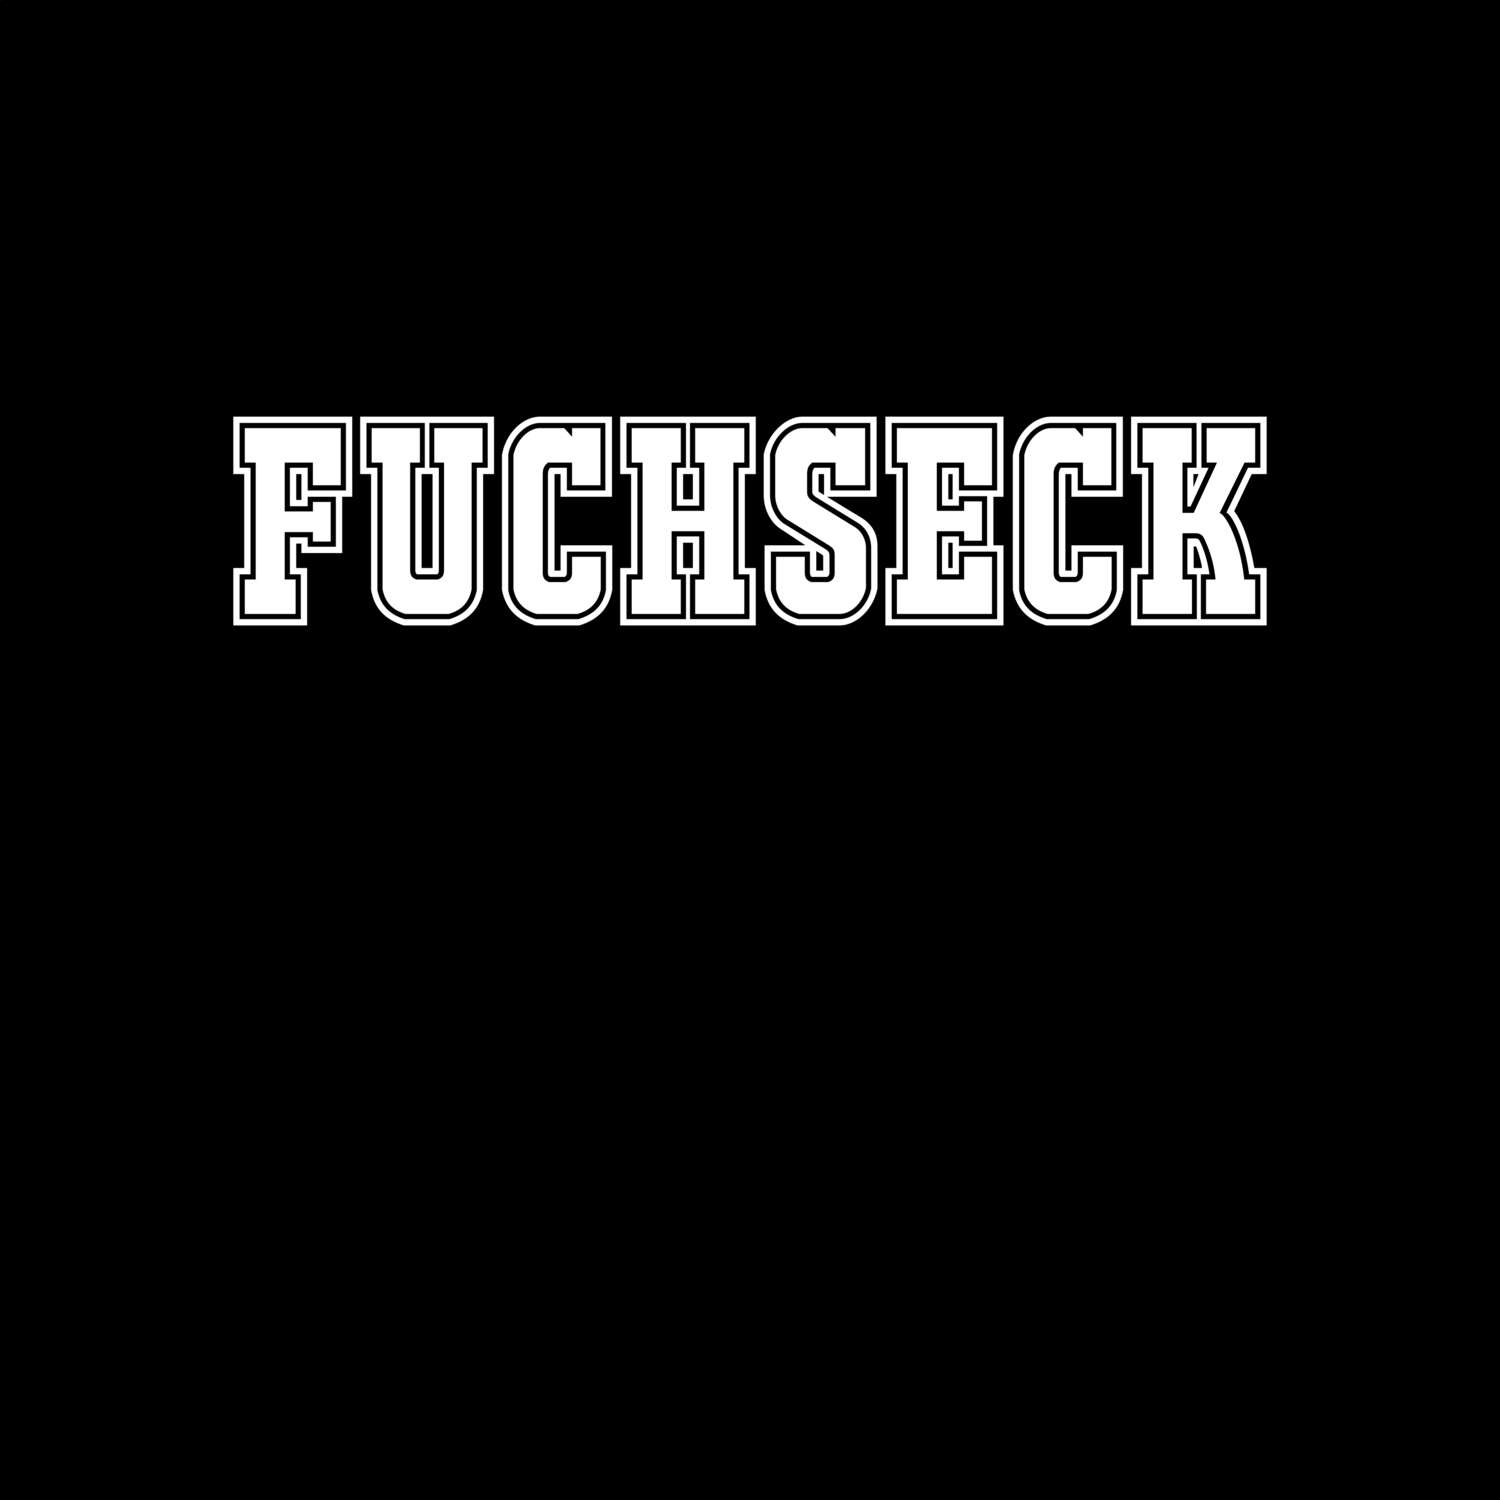 Fuchseck T-Shirt »Classic«